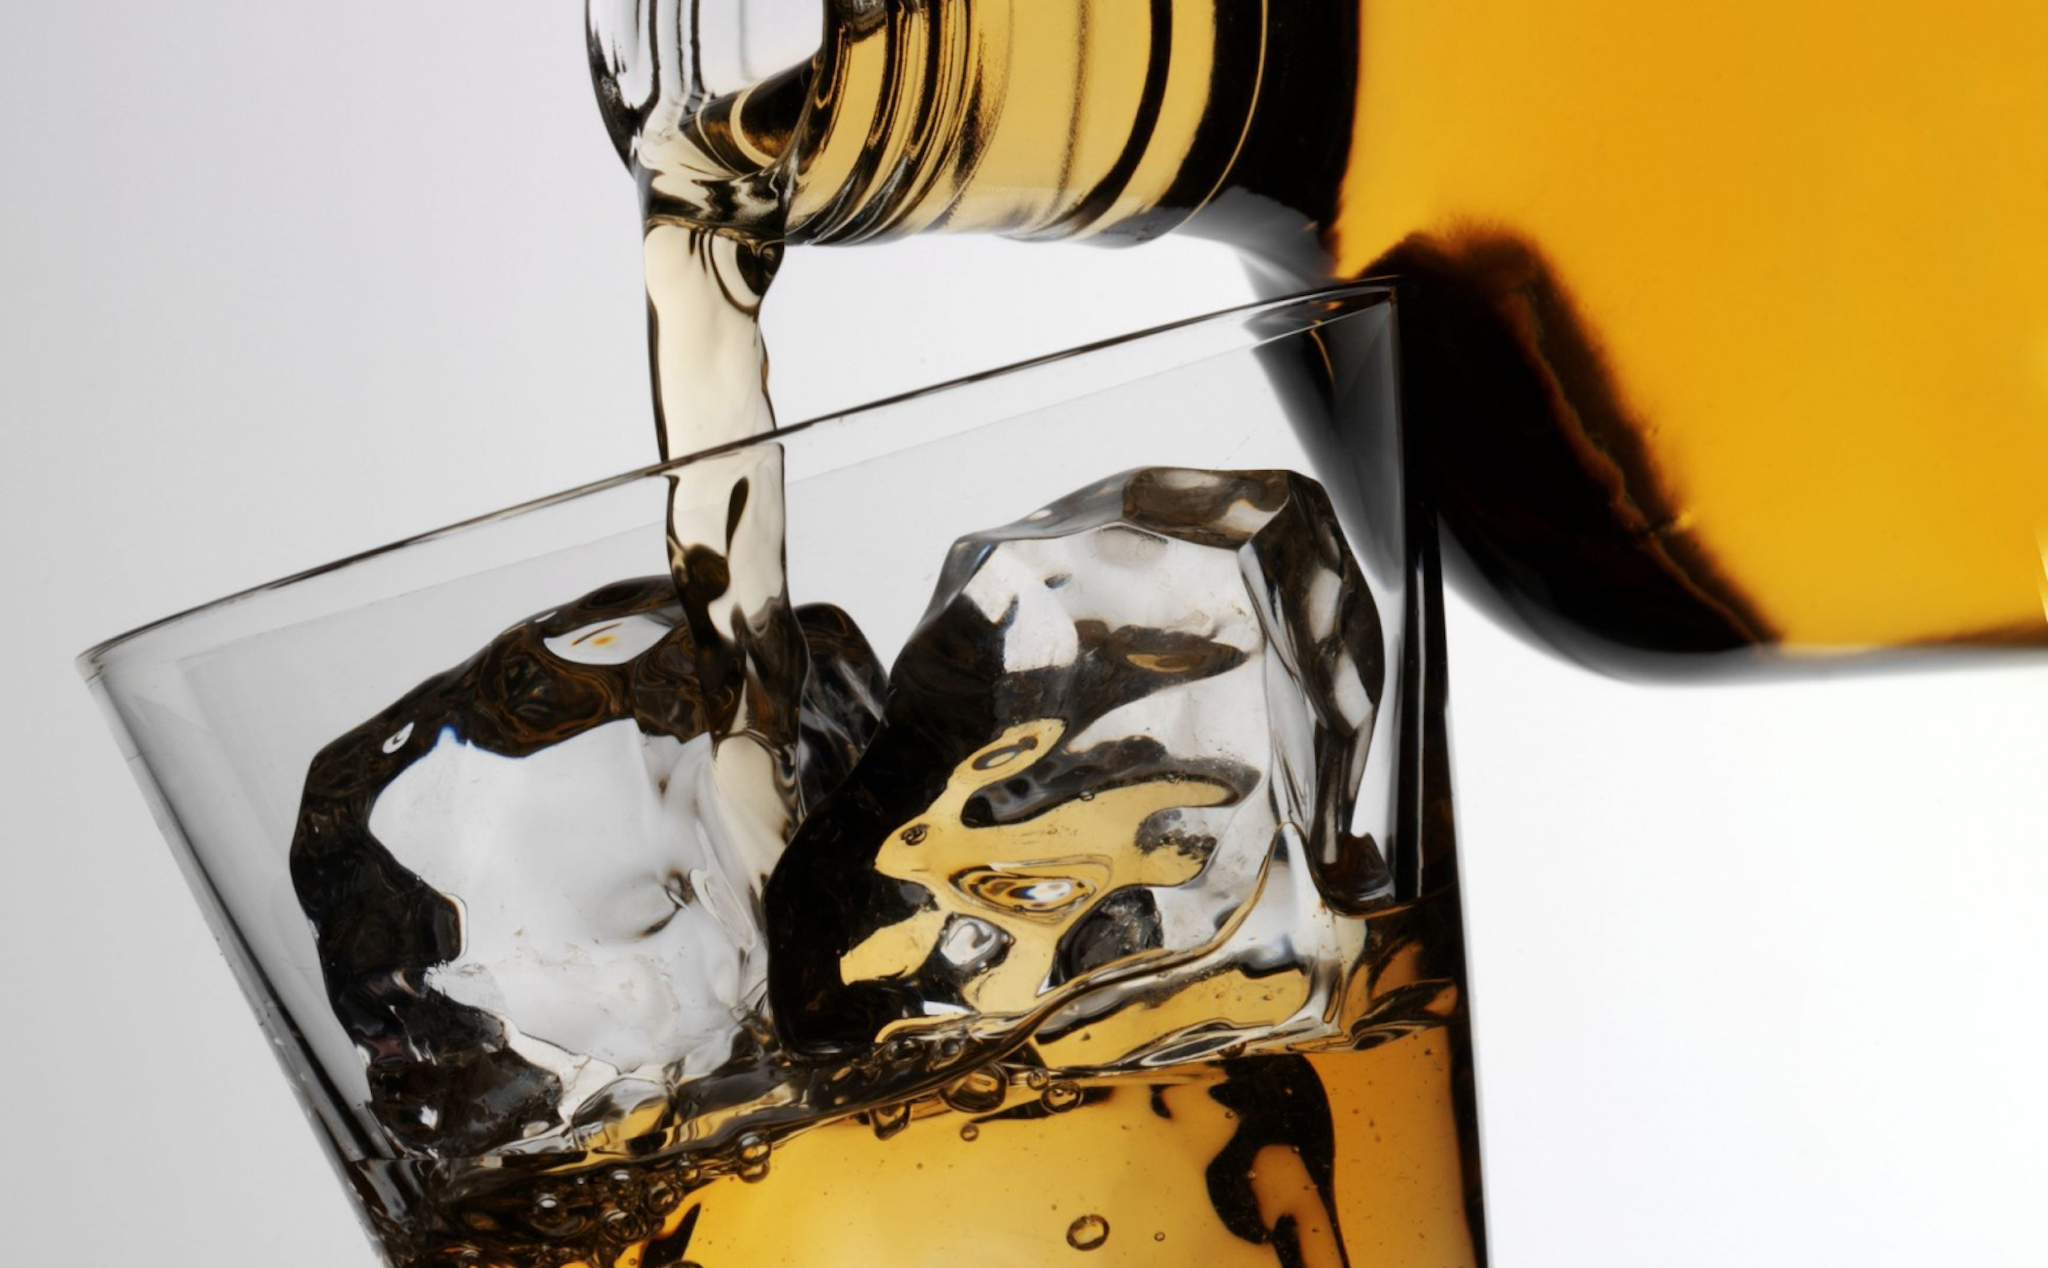 Lại có nghiên cứu nói đồ uống có cồn nhẹ vẫn tăng cao nguy cơ ung thư